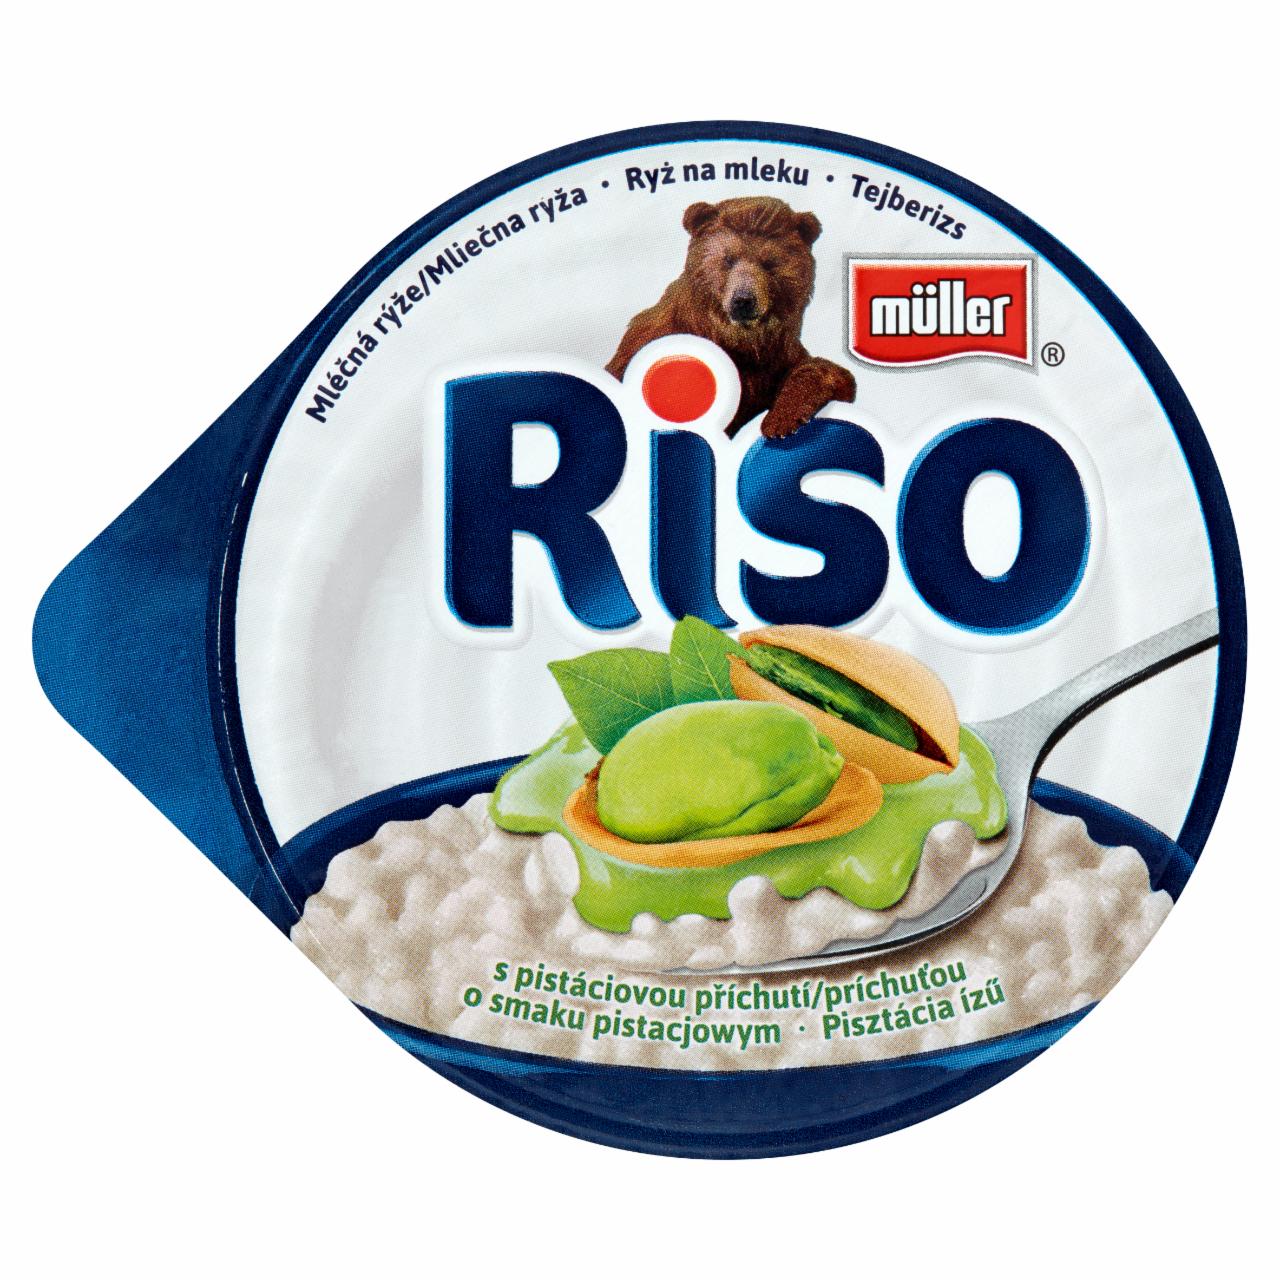 Zdjęcia - Müller Riso Deser mleczno-ryżowy z sosem o smaku pistacjowym 200 g